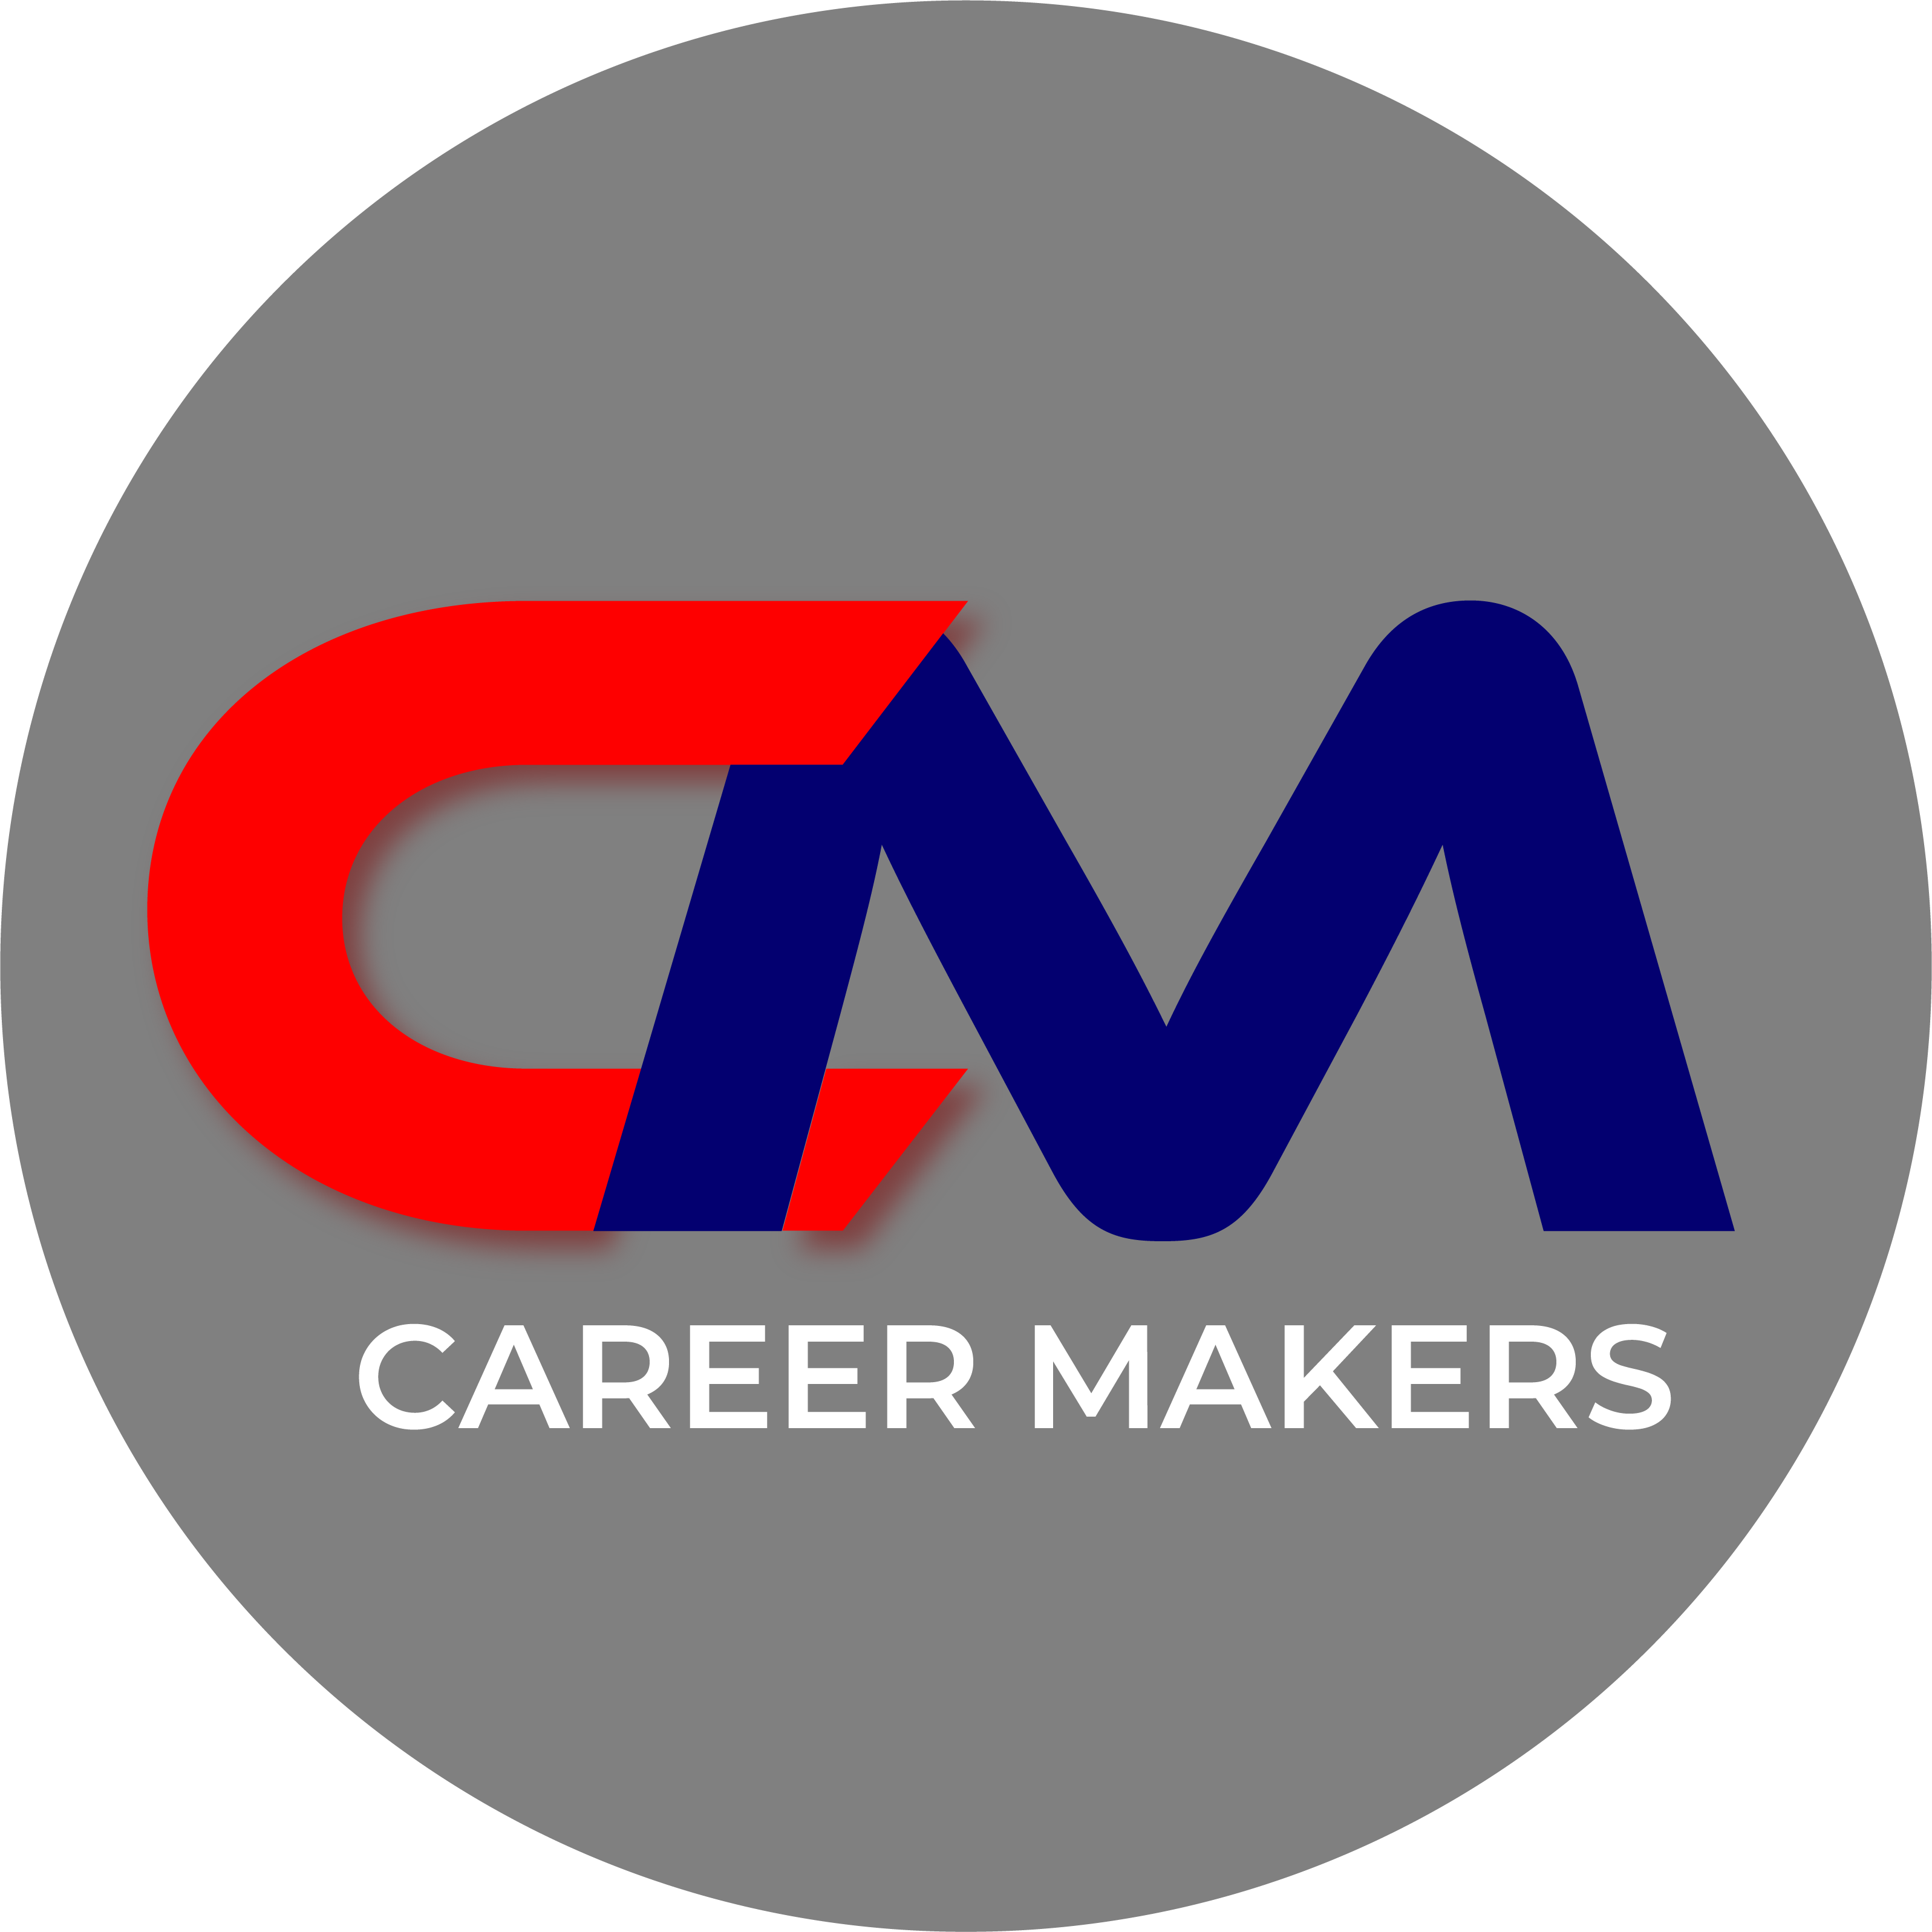 Career Makers